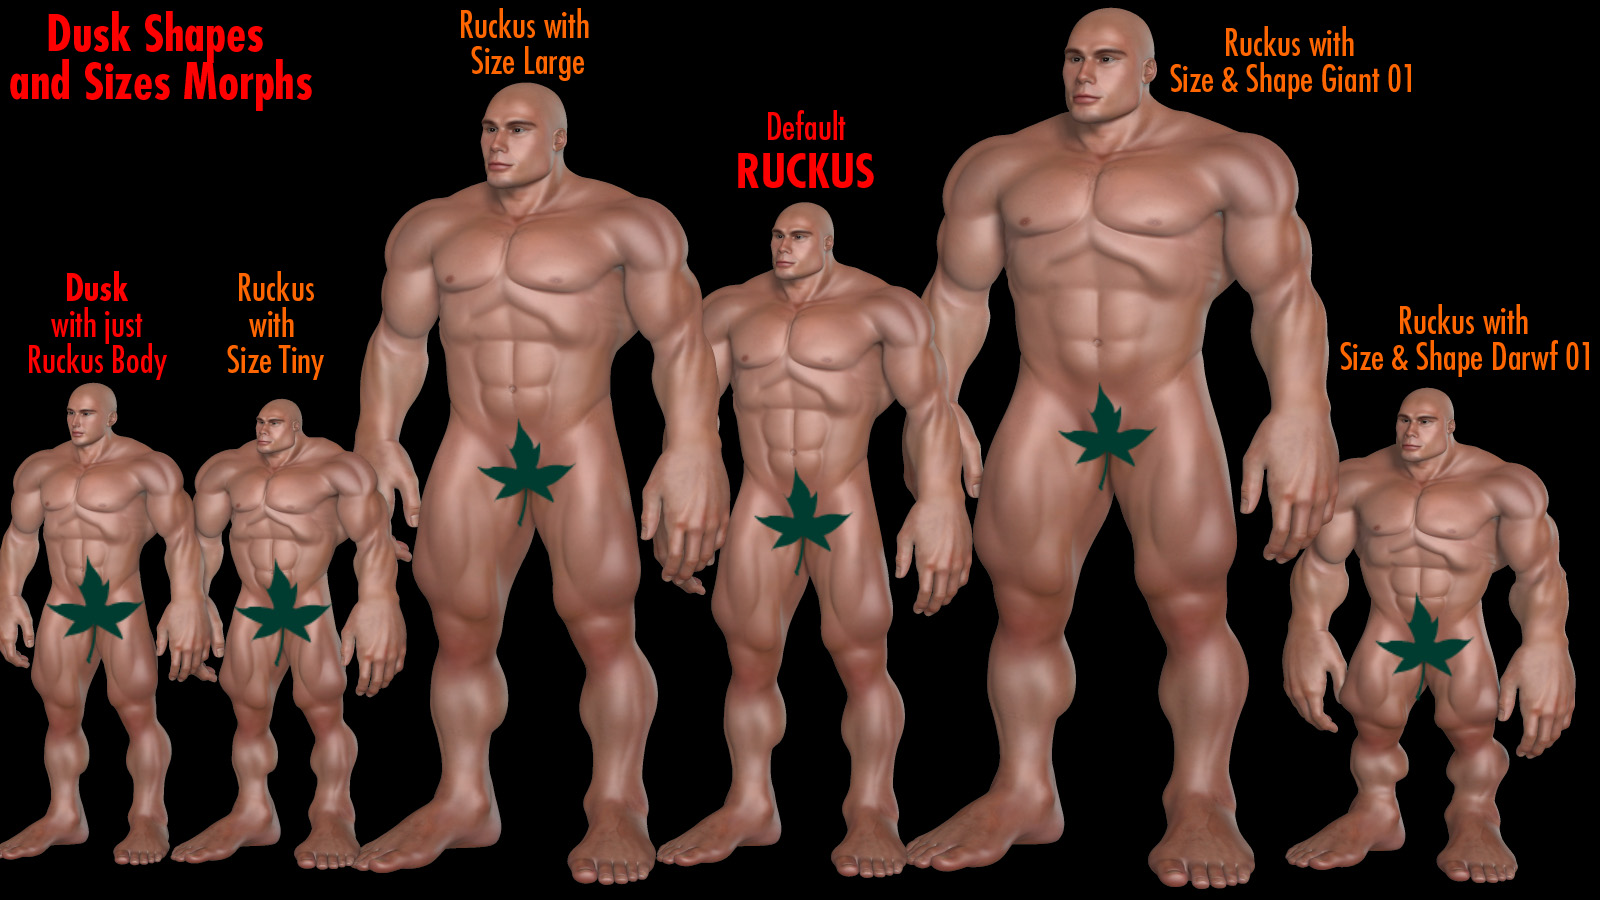 Ruckus with Dusk Shapes And Sizes morph set